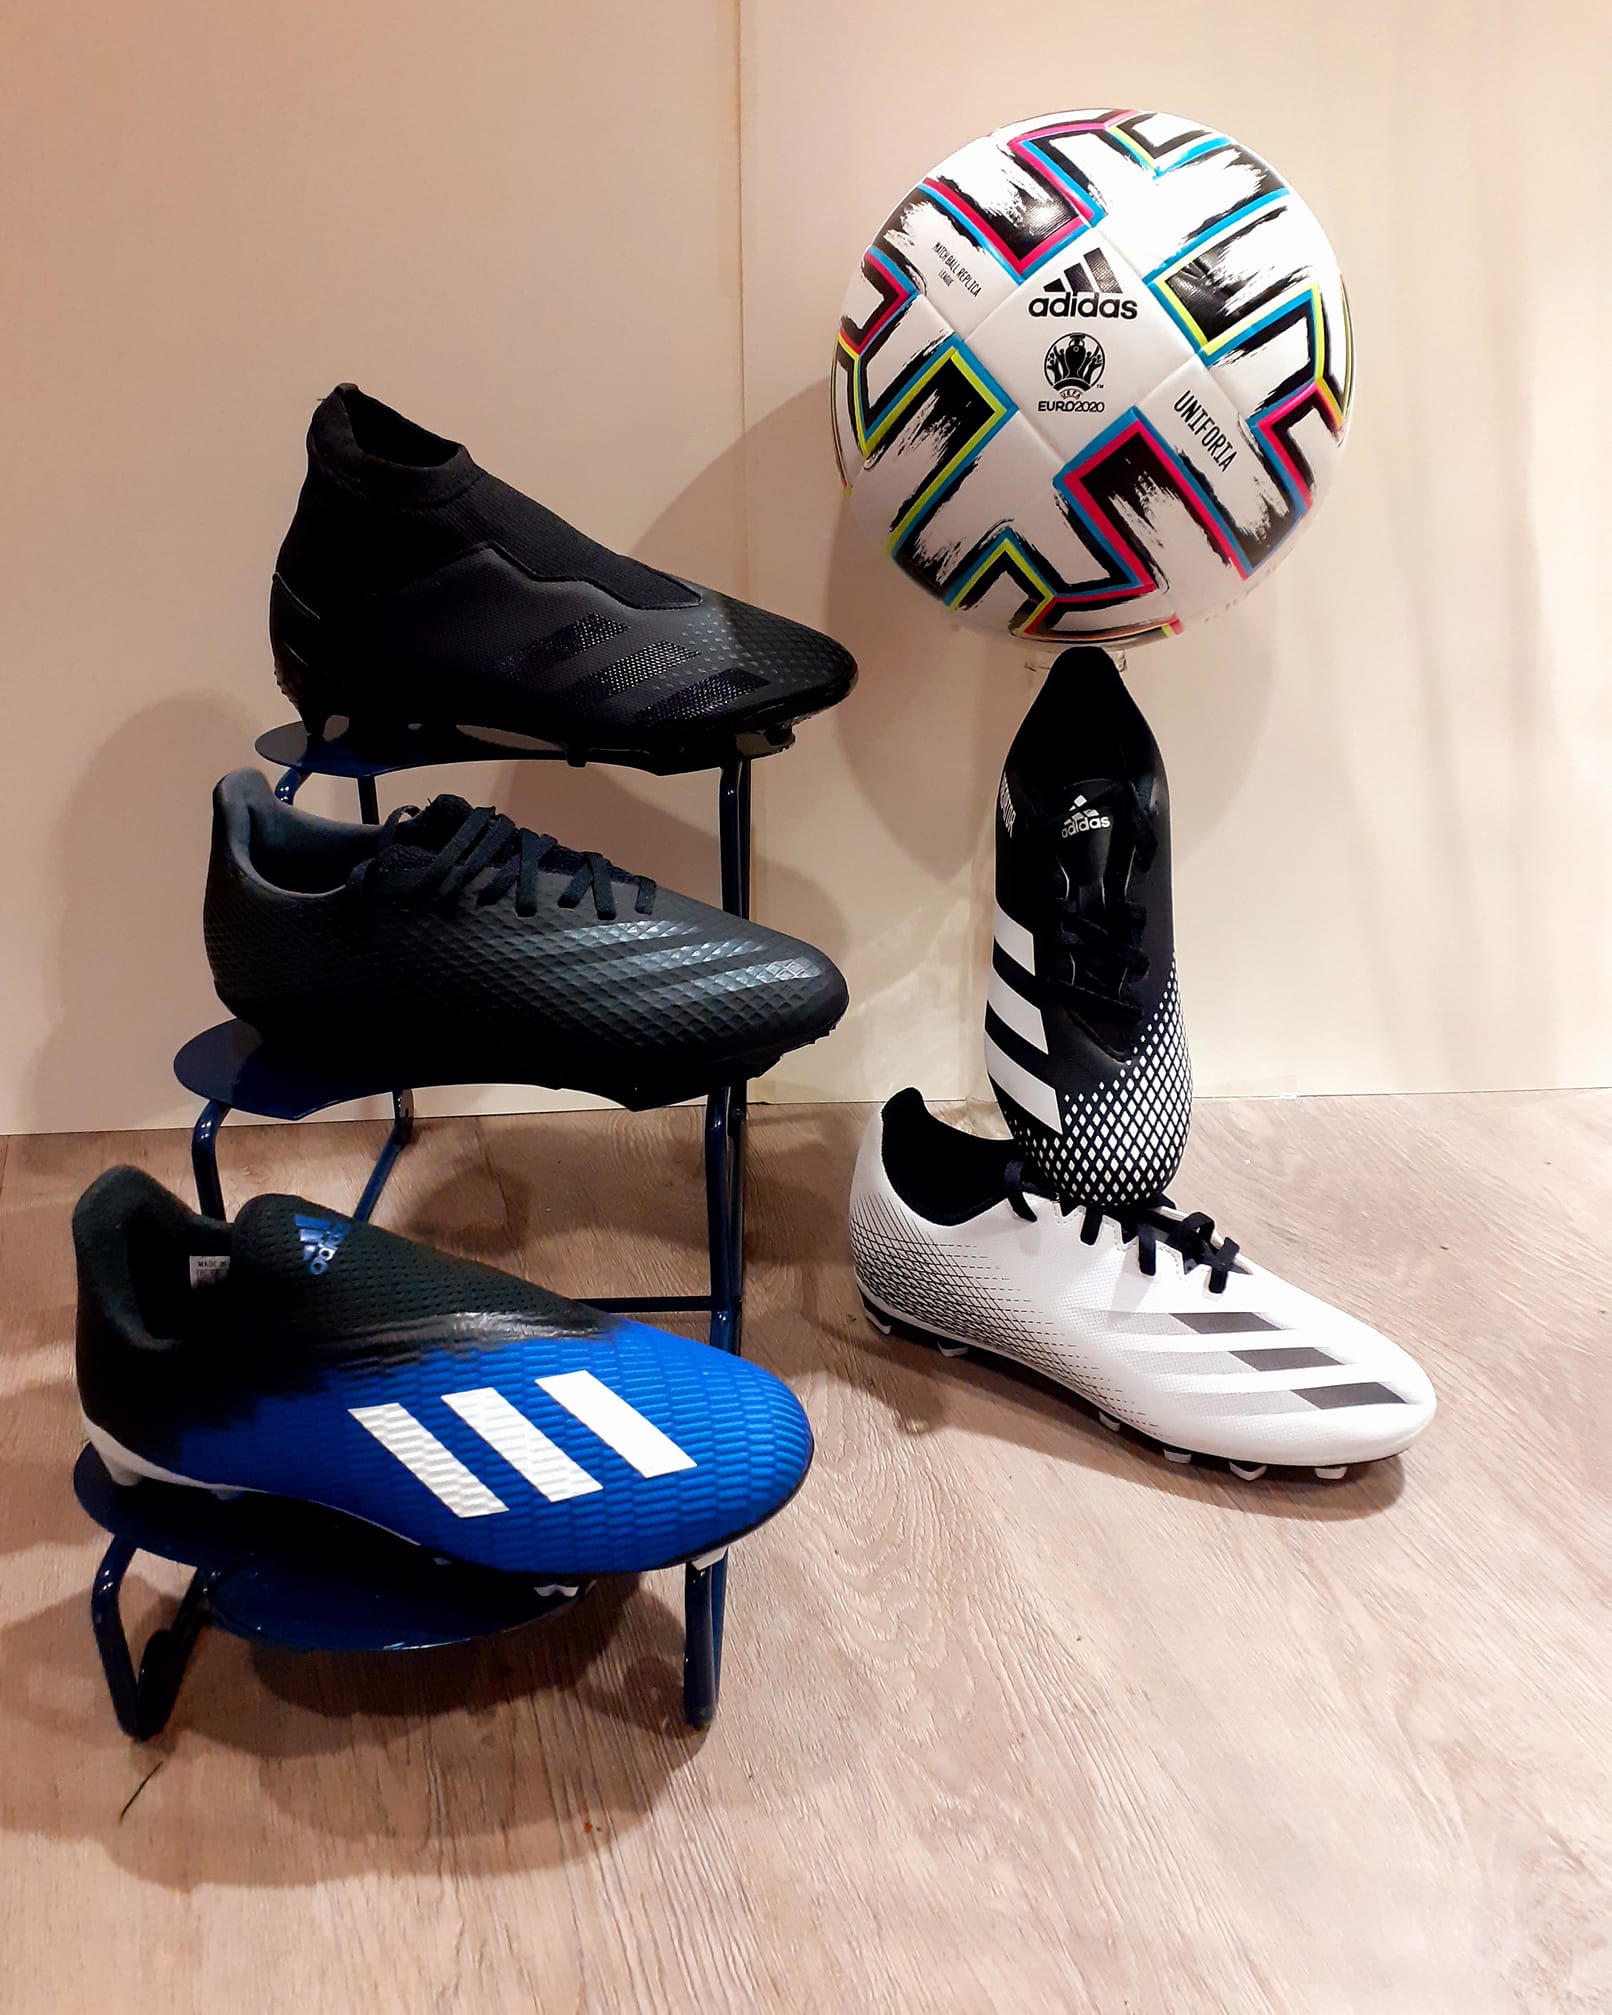 Vijftig Weinig gesponsord Adidas Voetbalschoenen voor de kids! Zijn de kinderen toe aan nieuwe  voetbalsc... - Sport- en Speelgoedhuis De Jager